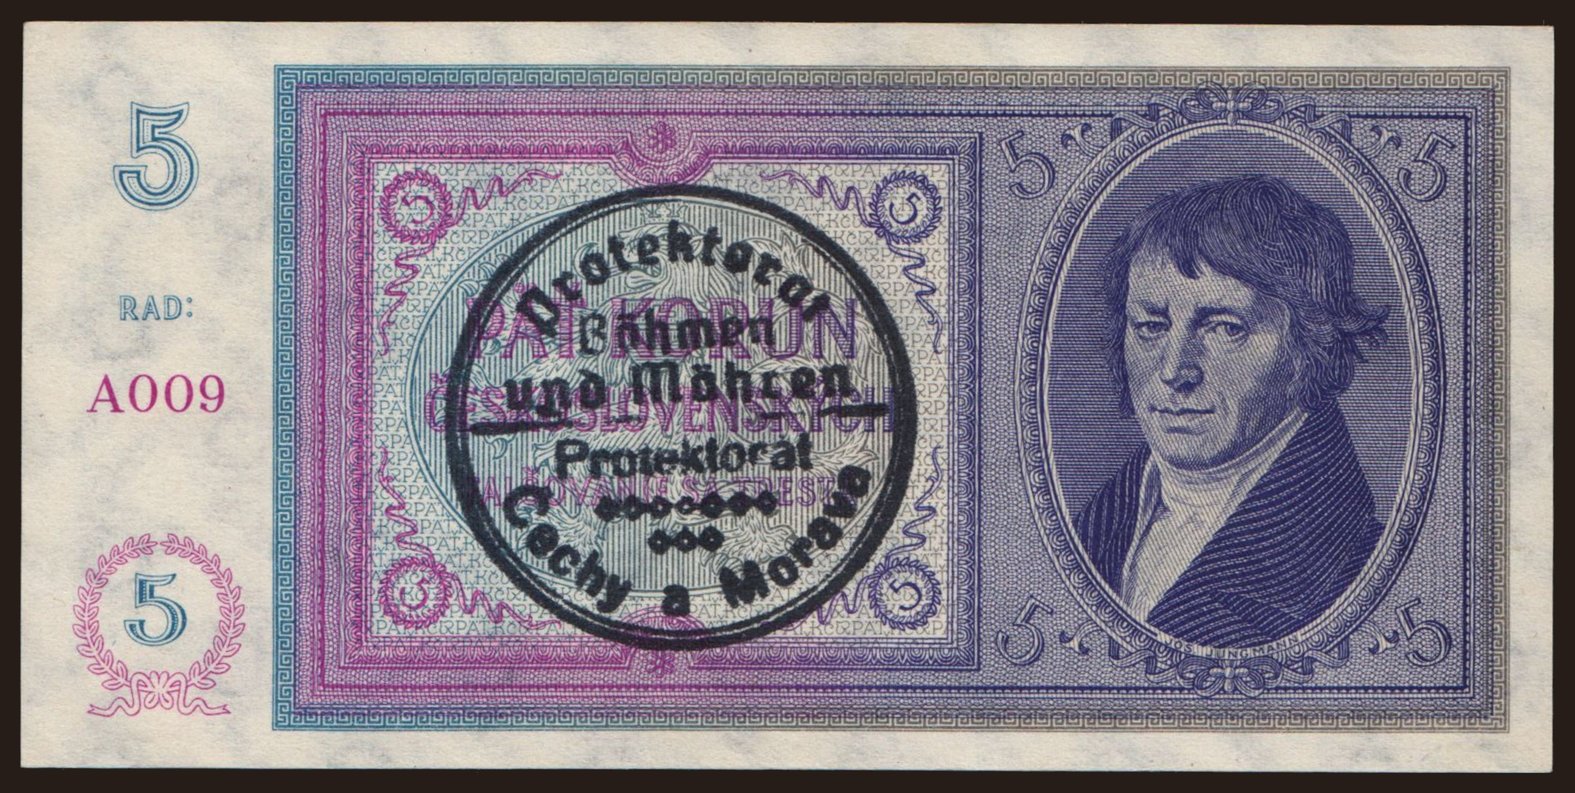 5 korun, 1938(40)